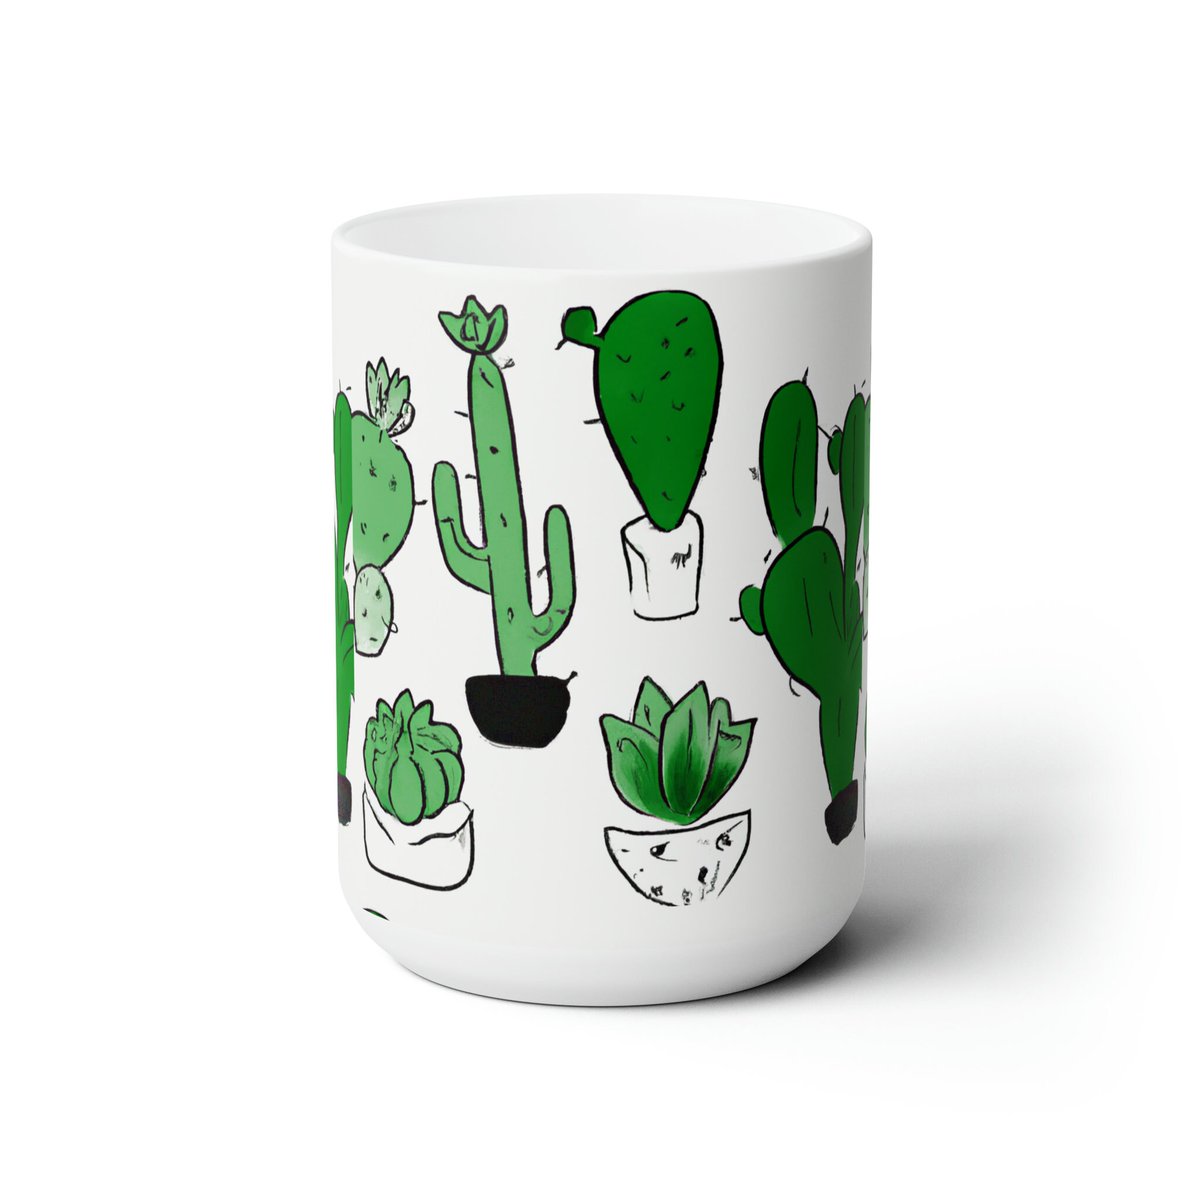 Cactus Ceramic Mug 
#mug #cactus #officemug #coffee #tea 
etsy.com/listing/147889…